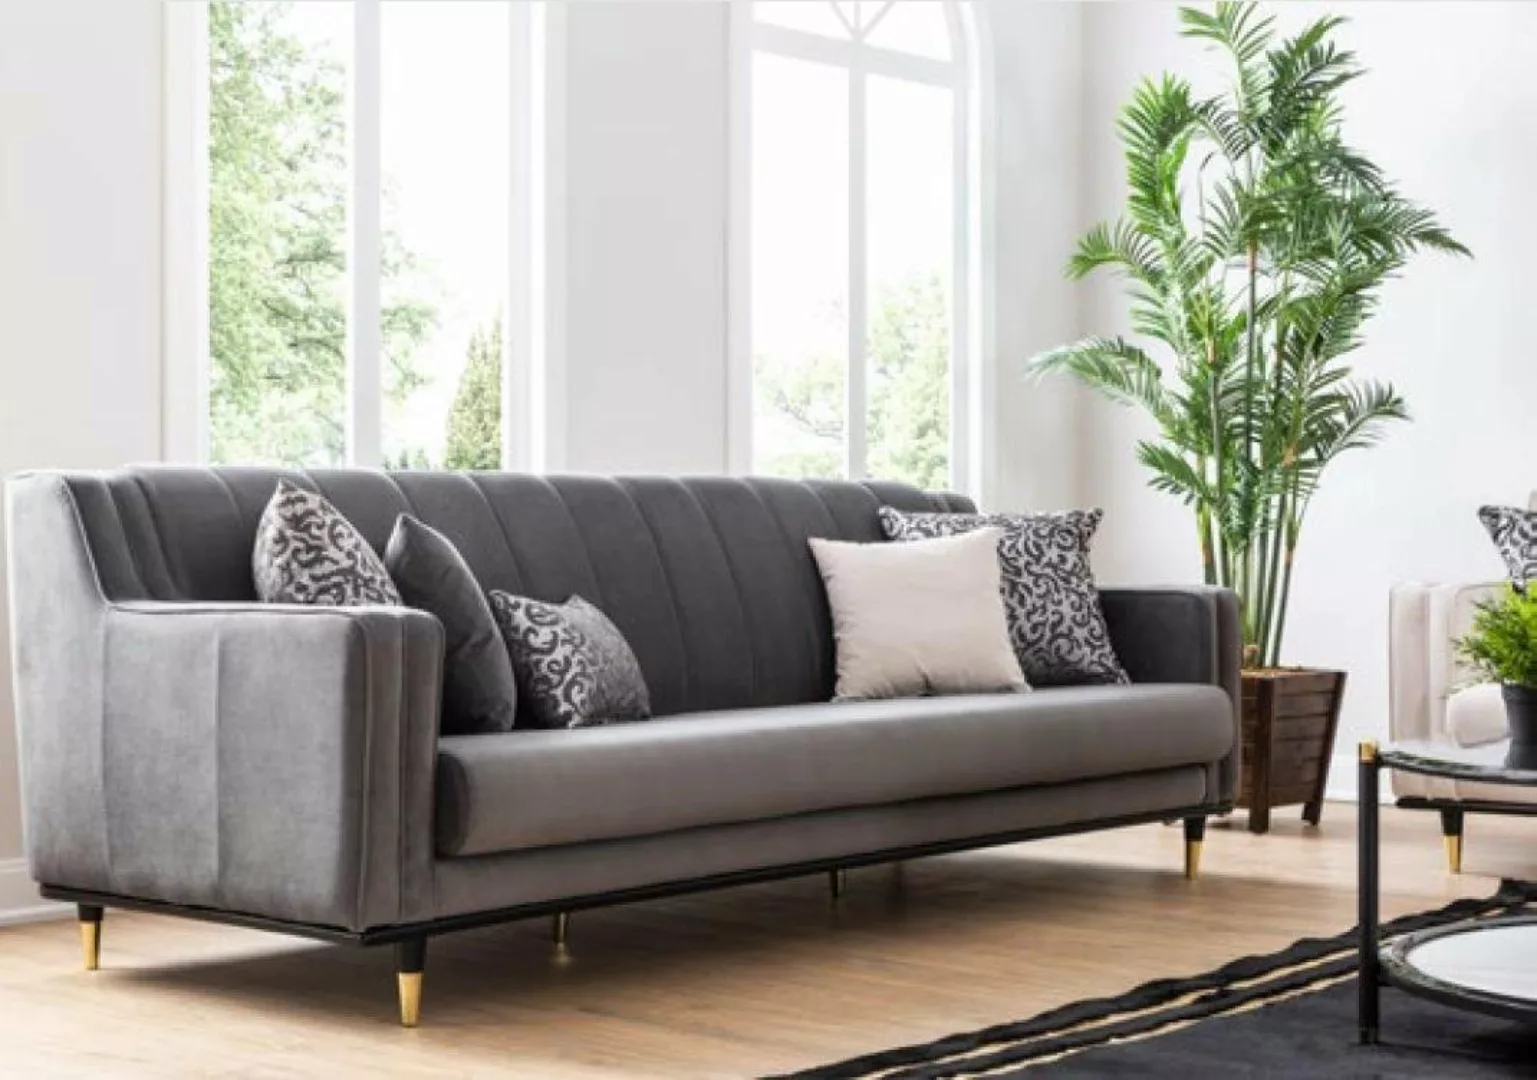 JVmoebel 3-Sitzer Grau Sofa 3 Sitz Sofas Sitz Design Couch Dreisitzer Luxus günstig online kaufen